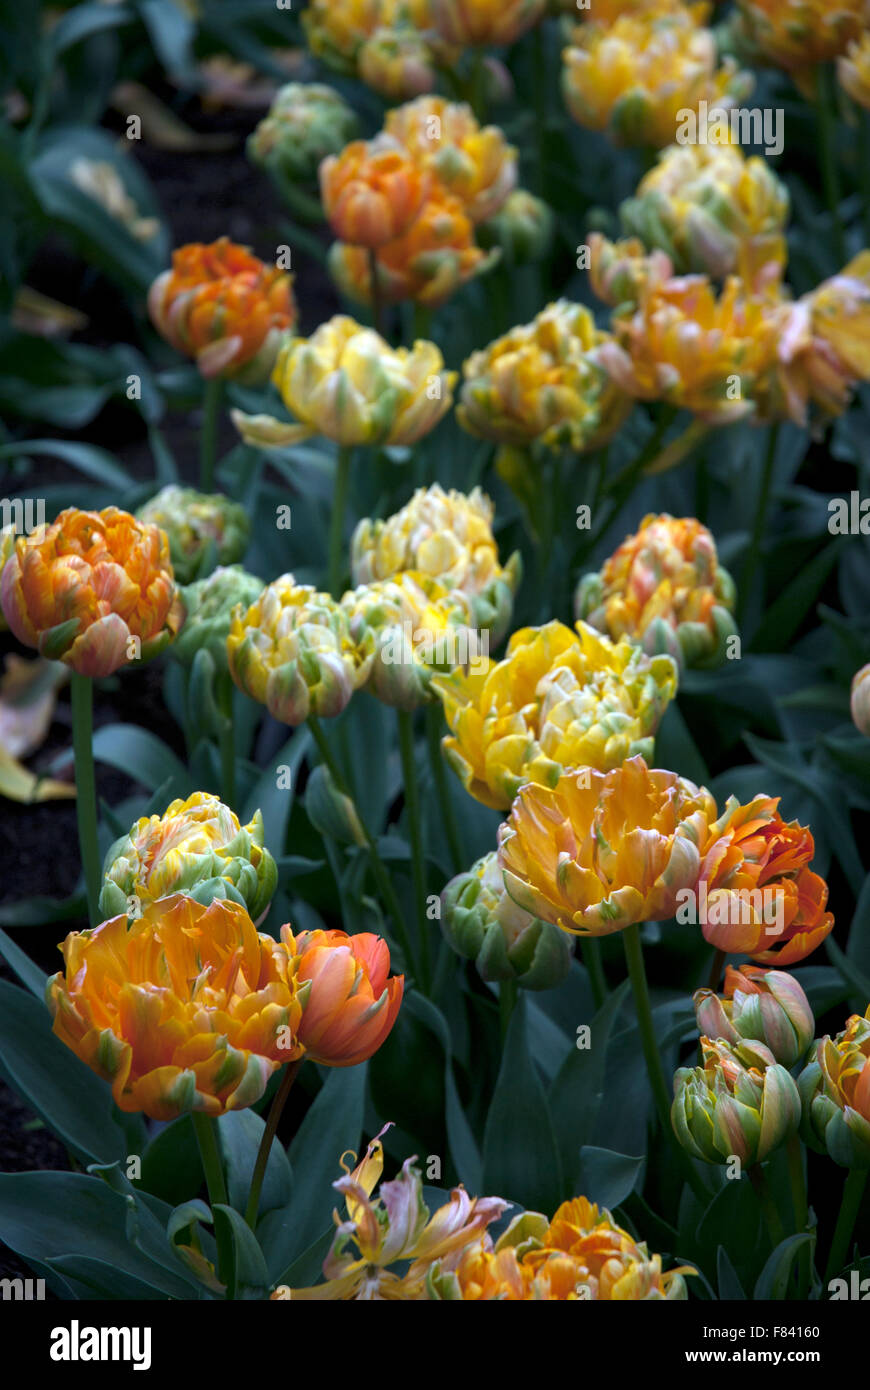 L'orange vif et jaune double la fin de la floraison des tulipes Cornwall England UK Banque D'Images